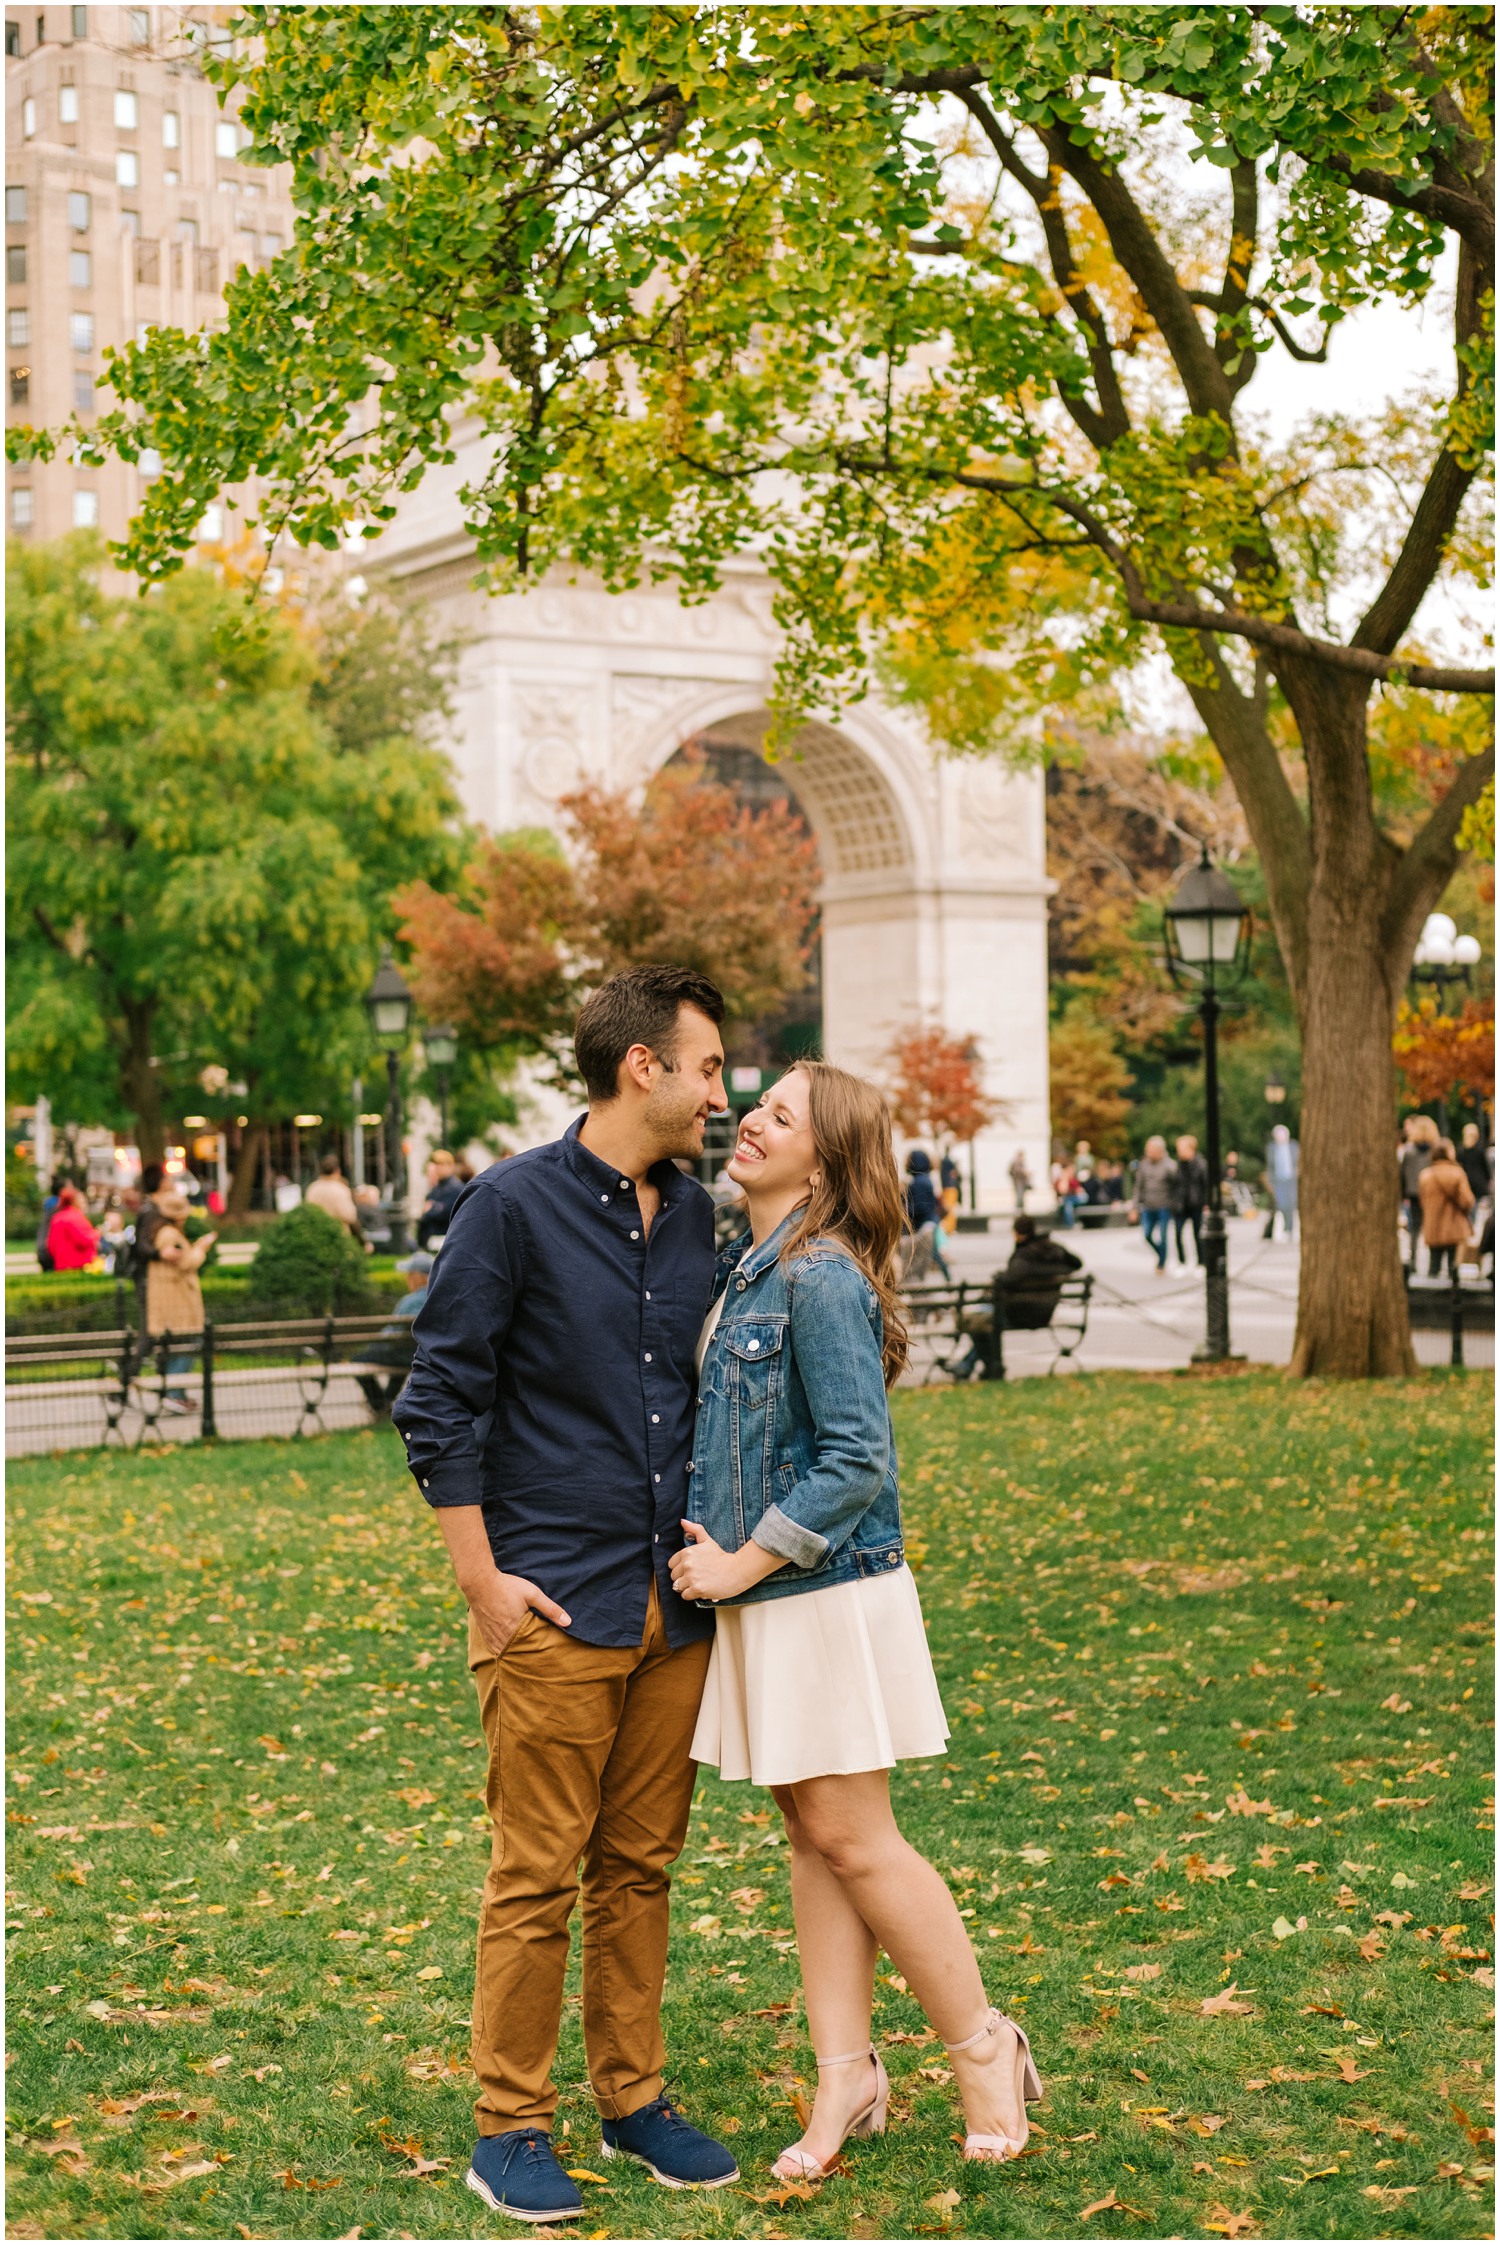 Washington Park engagement session with NYC couple